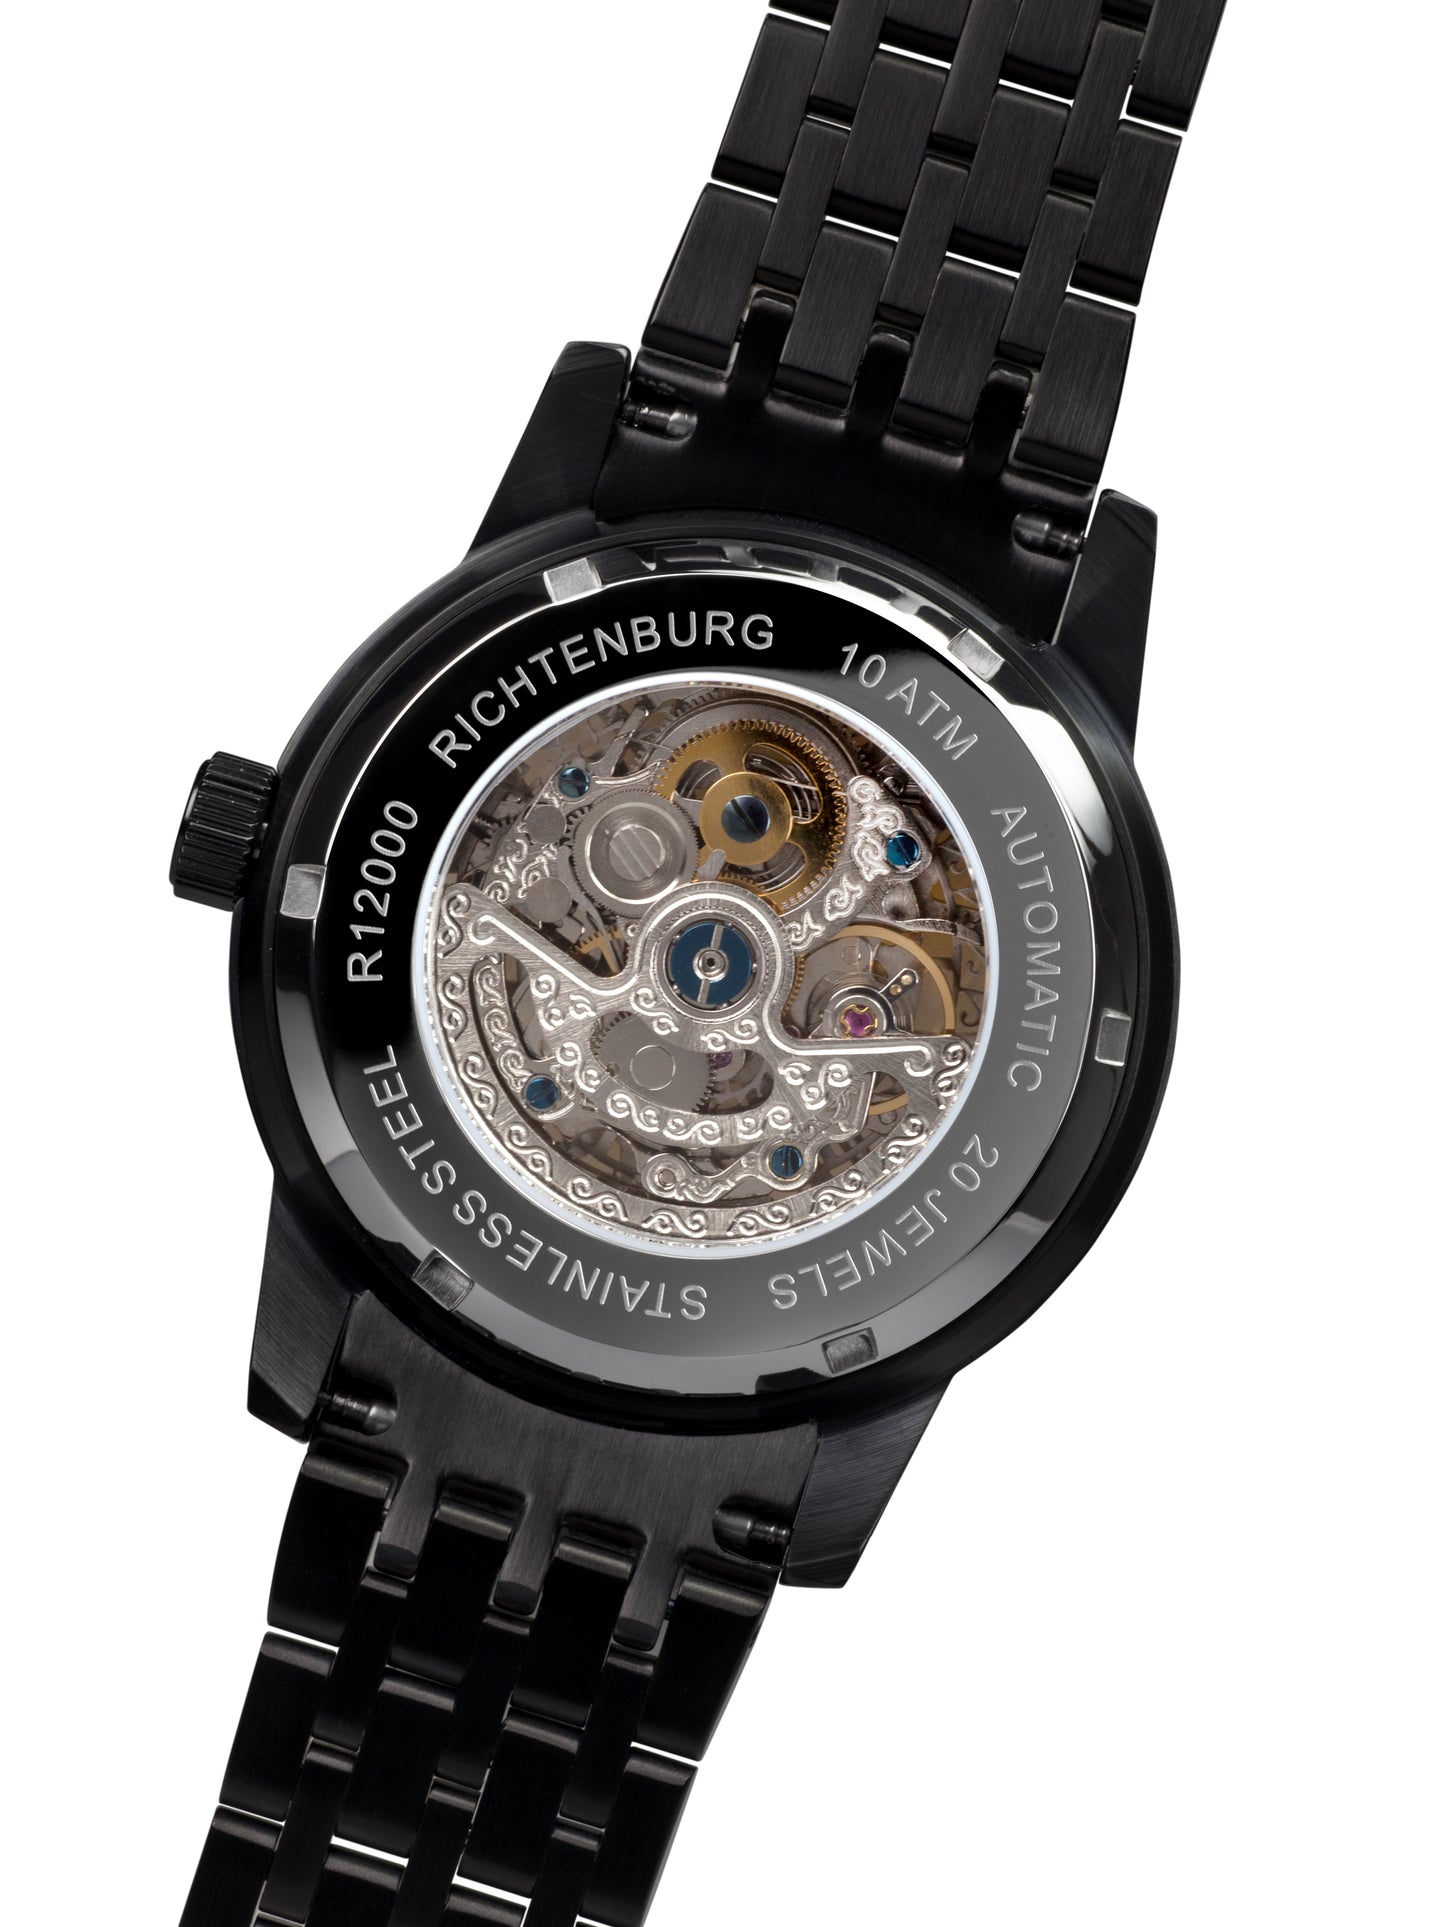 Automatic watches — Speedwheel — Richtenburg — steel blue